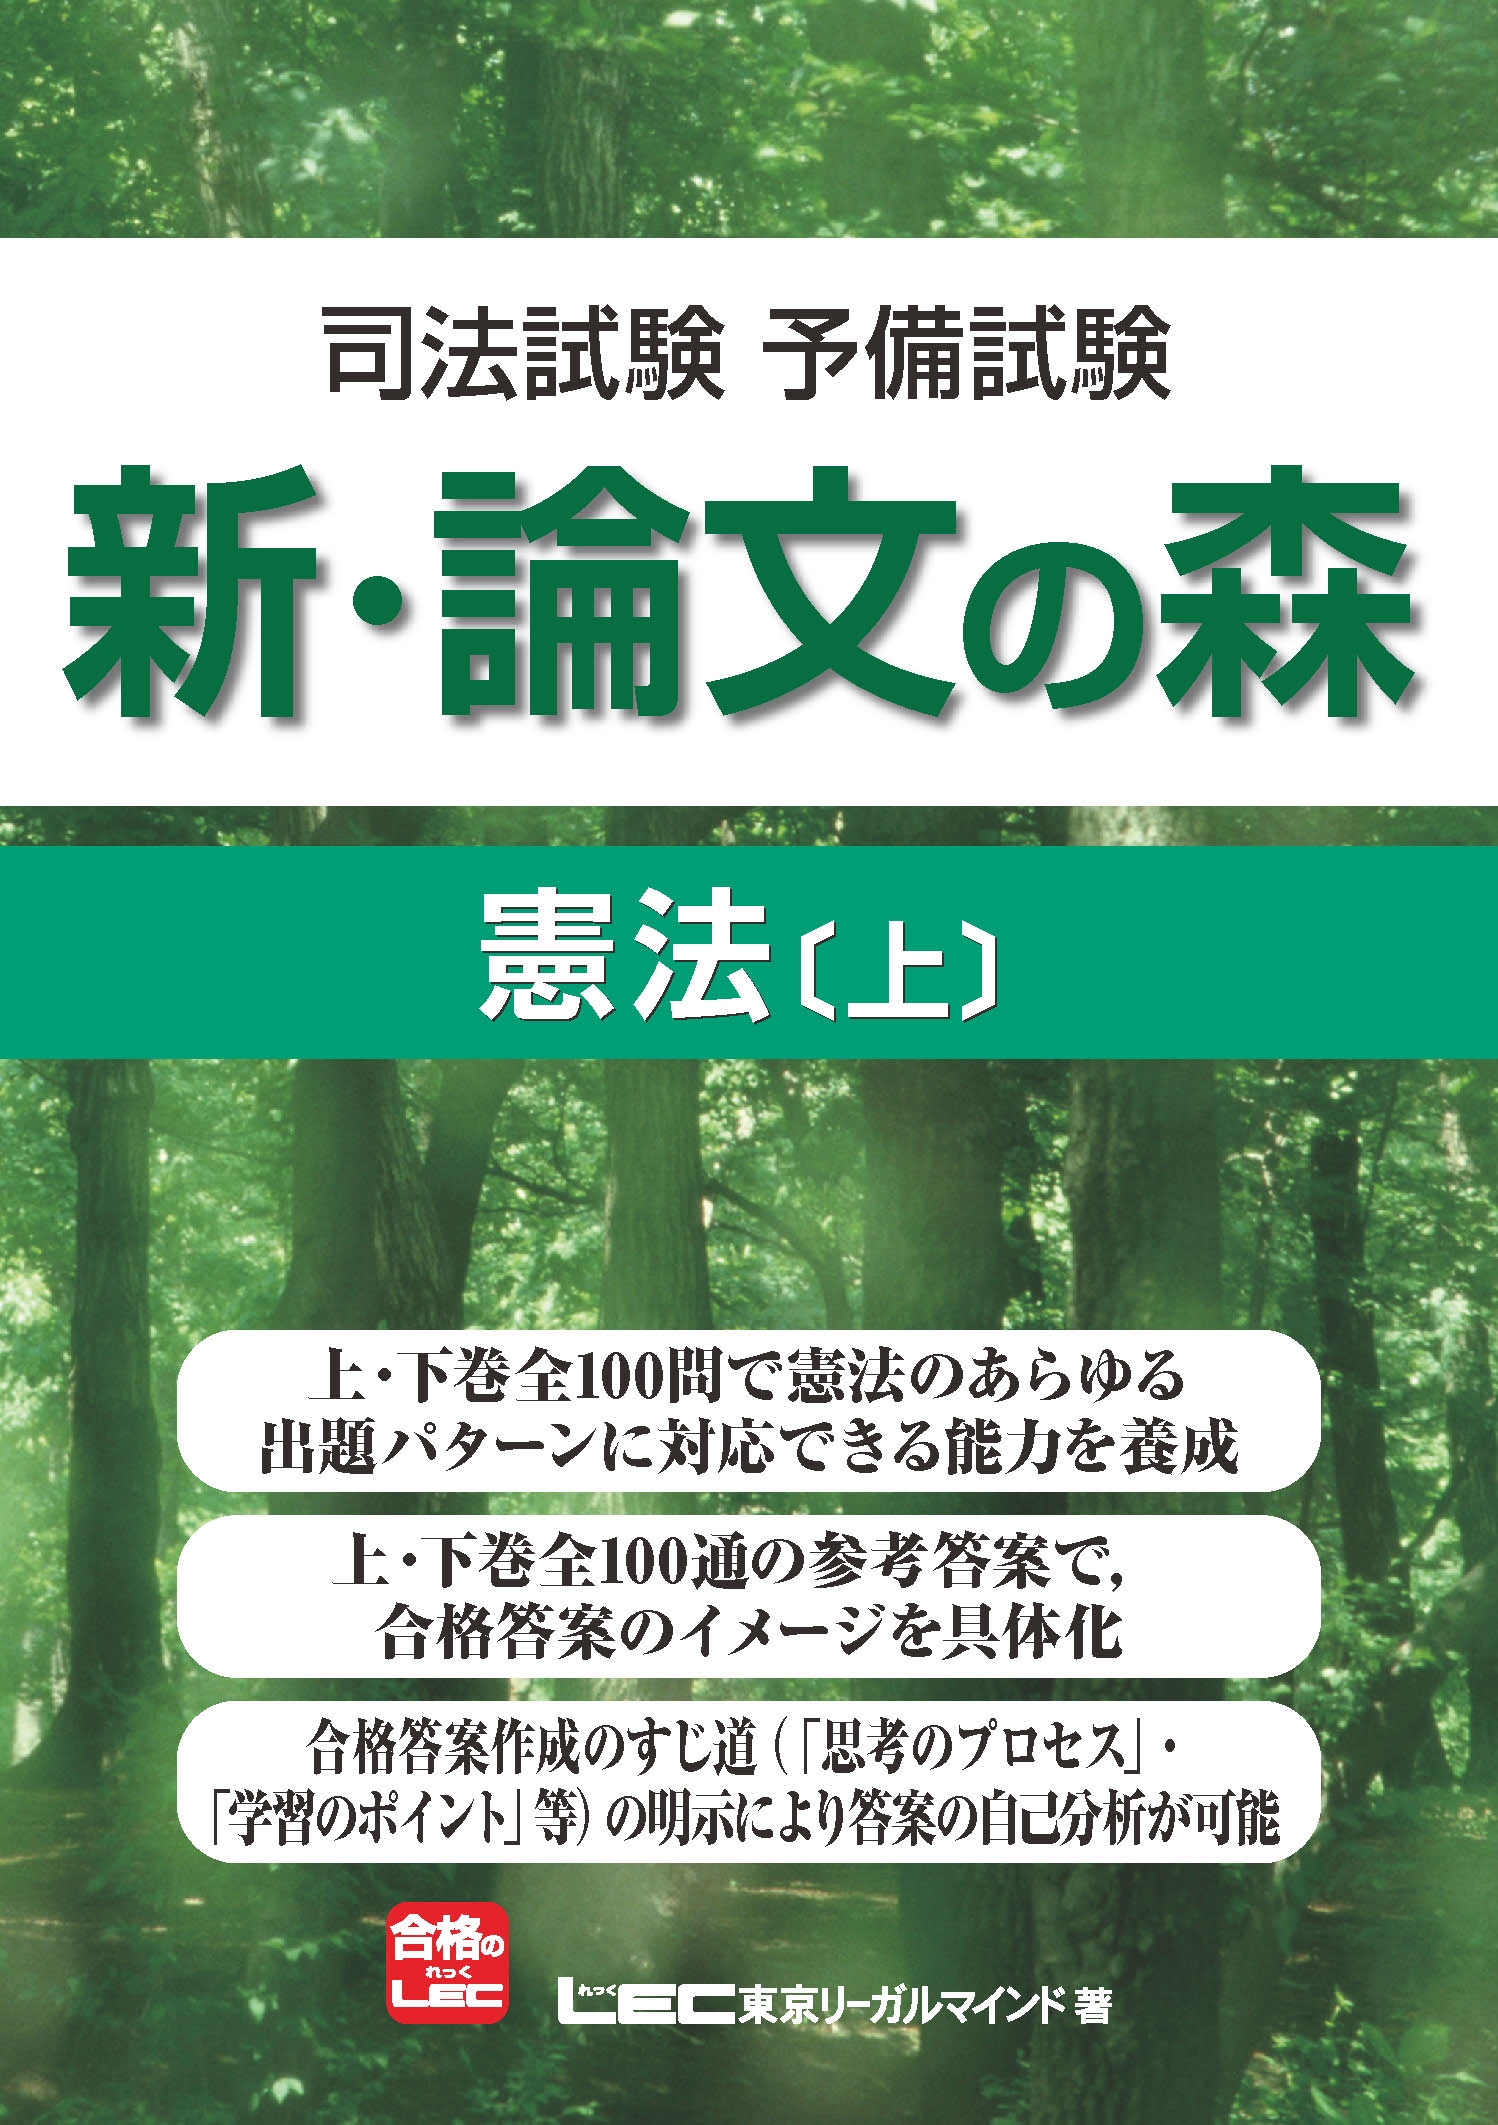 司法試験予備試験 新・論文の森 憲法[上] - 東京リーガルマインド LEC ...